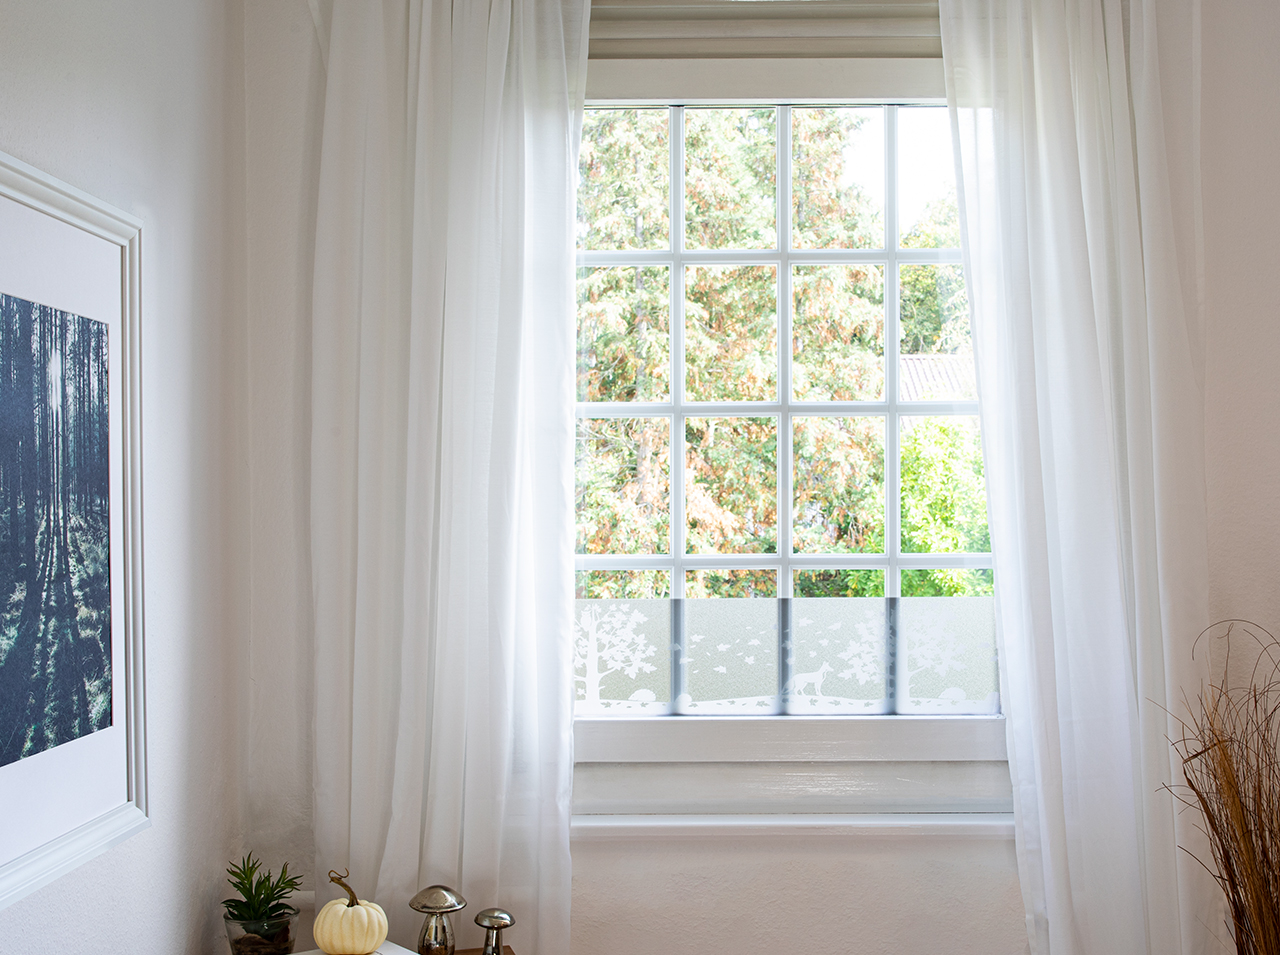 Pellicola decorativa per finestre con la silhouette di un paesaggio forestale in bianco applicata a una finestra.